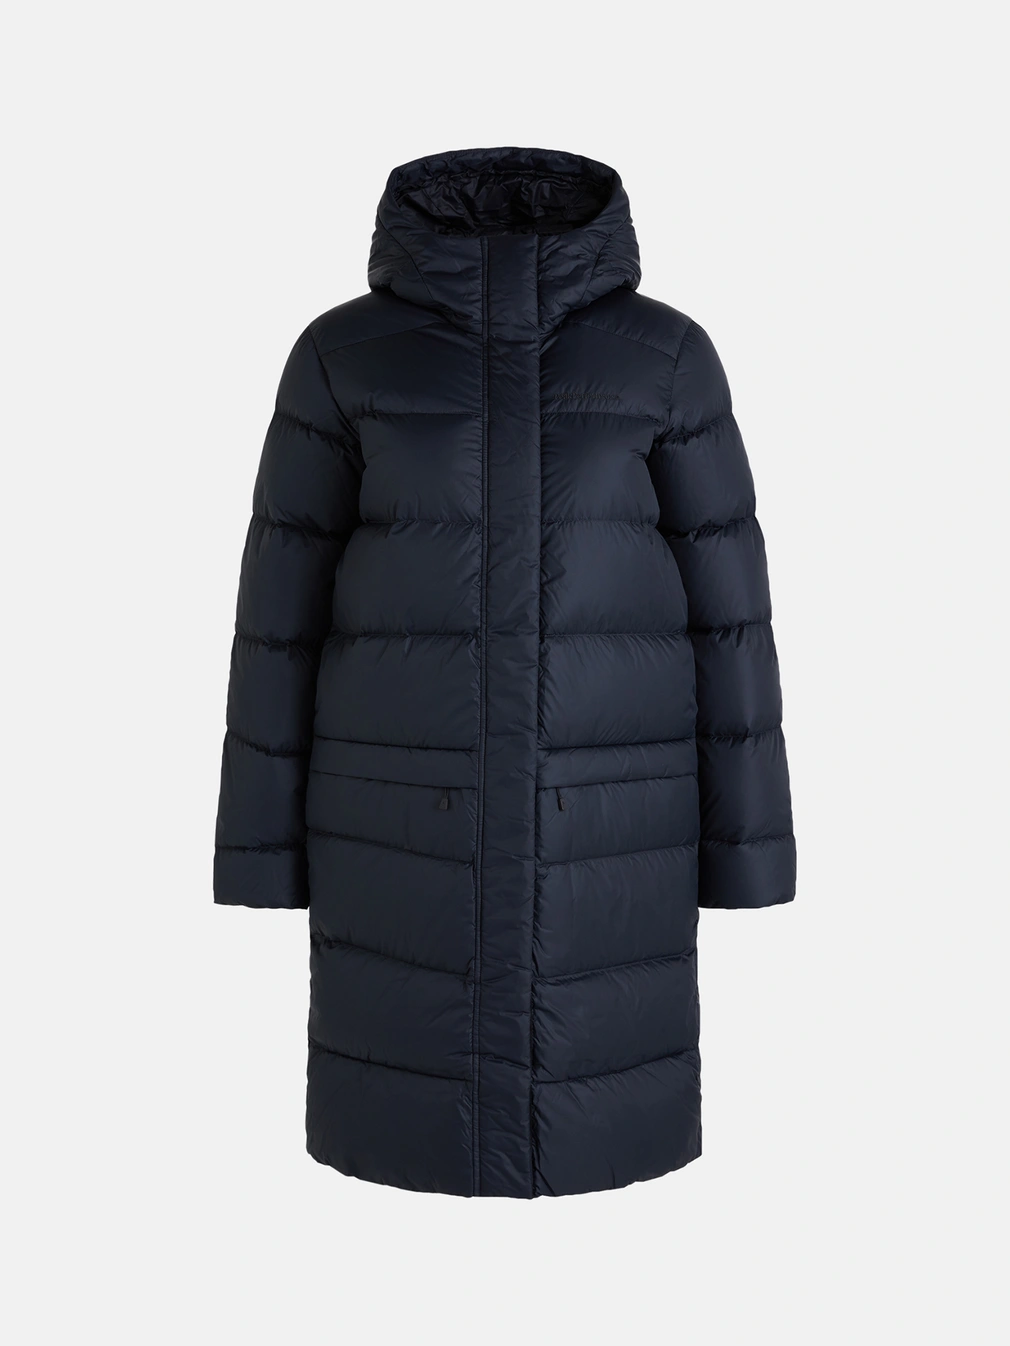 Buy Peak Performance Frost Down Coat Women Black - Scandinavian Fashion ...